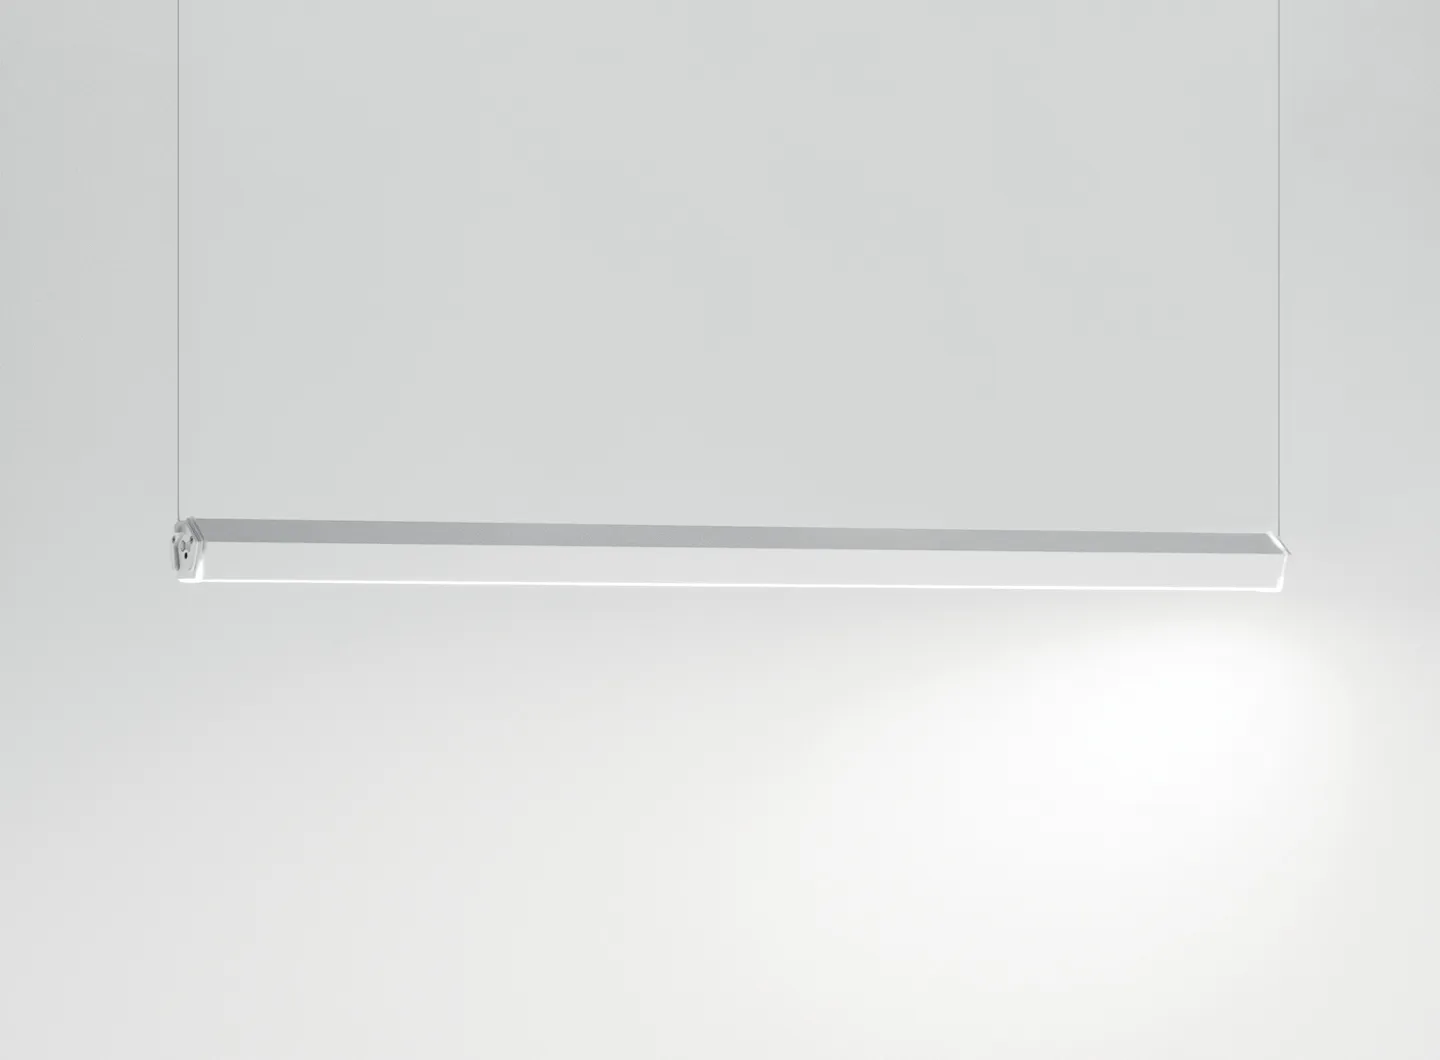 Zafferano _ Pencil horizontal suspension lamp, medium module with a white finish